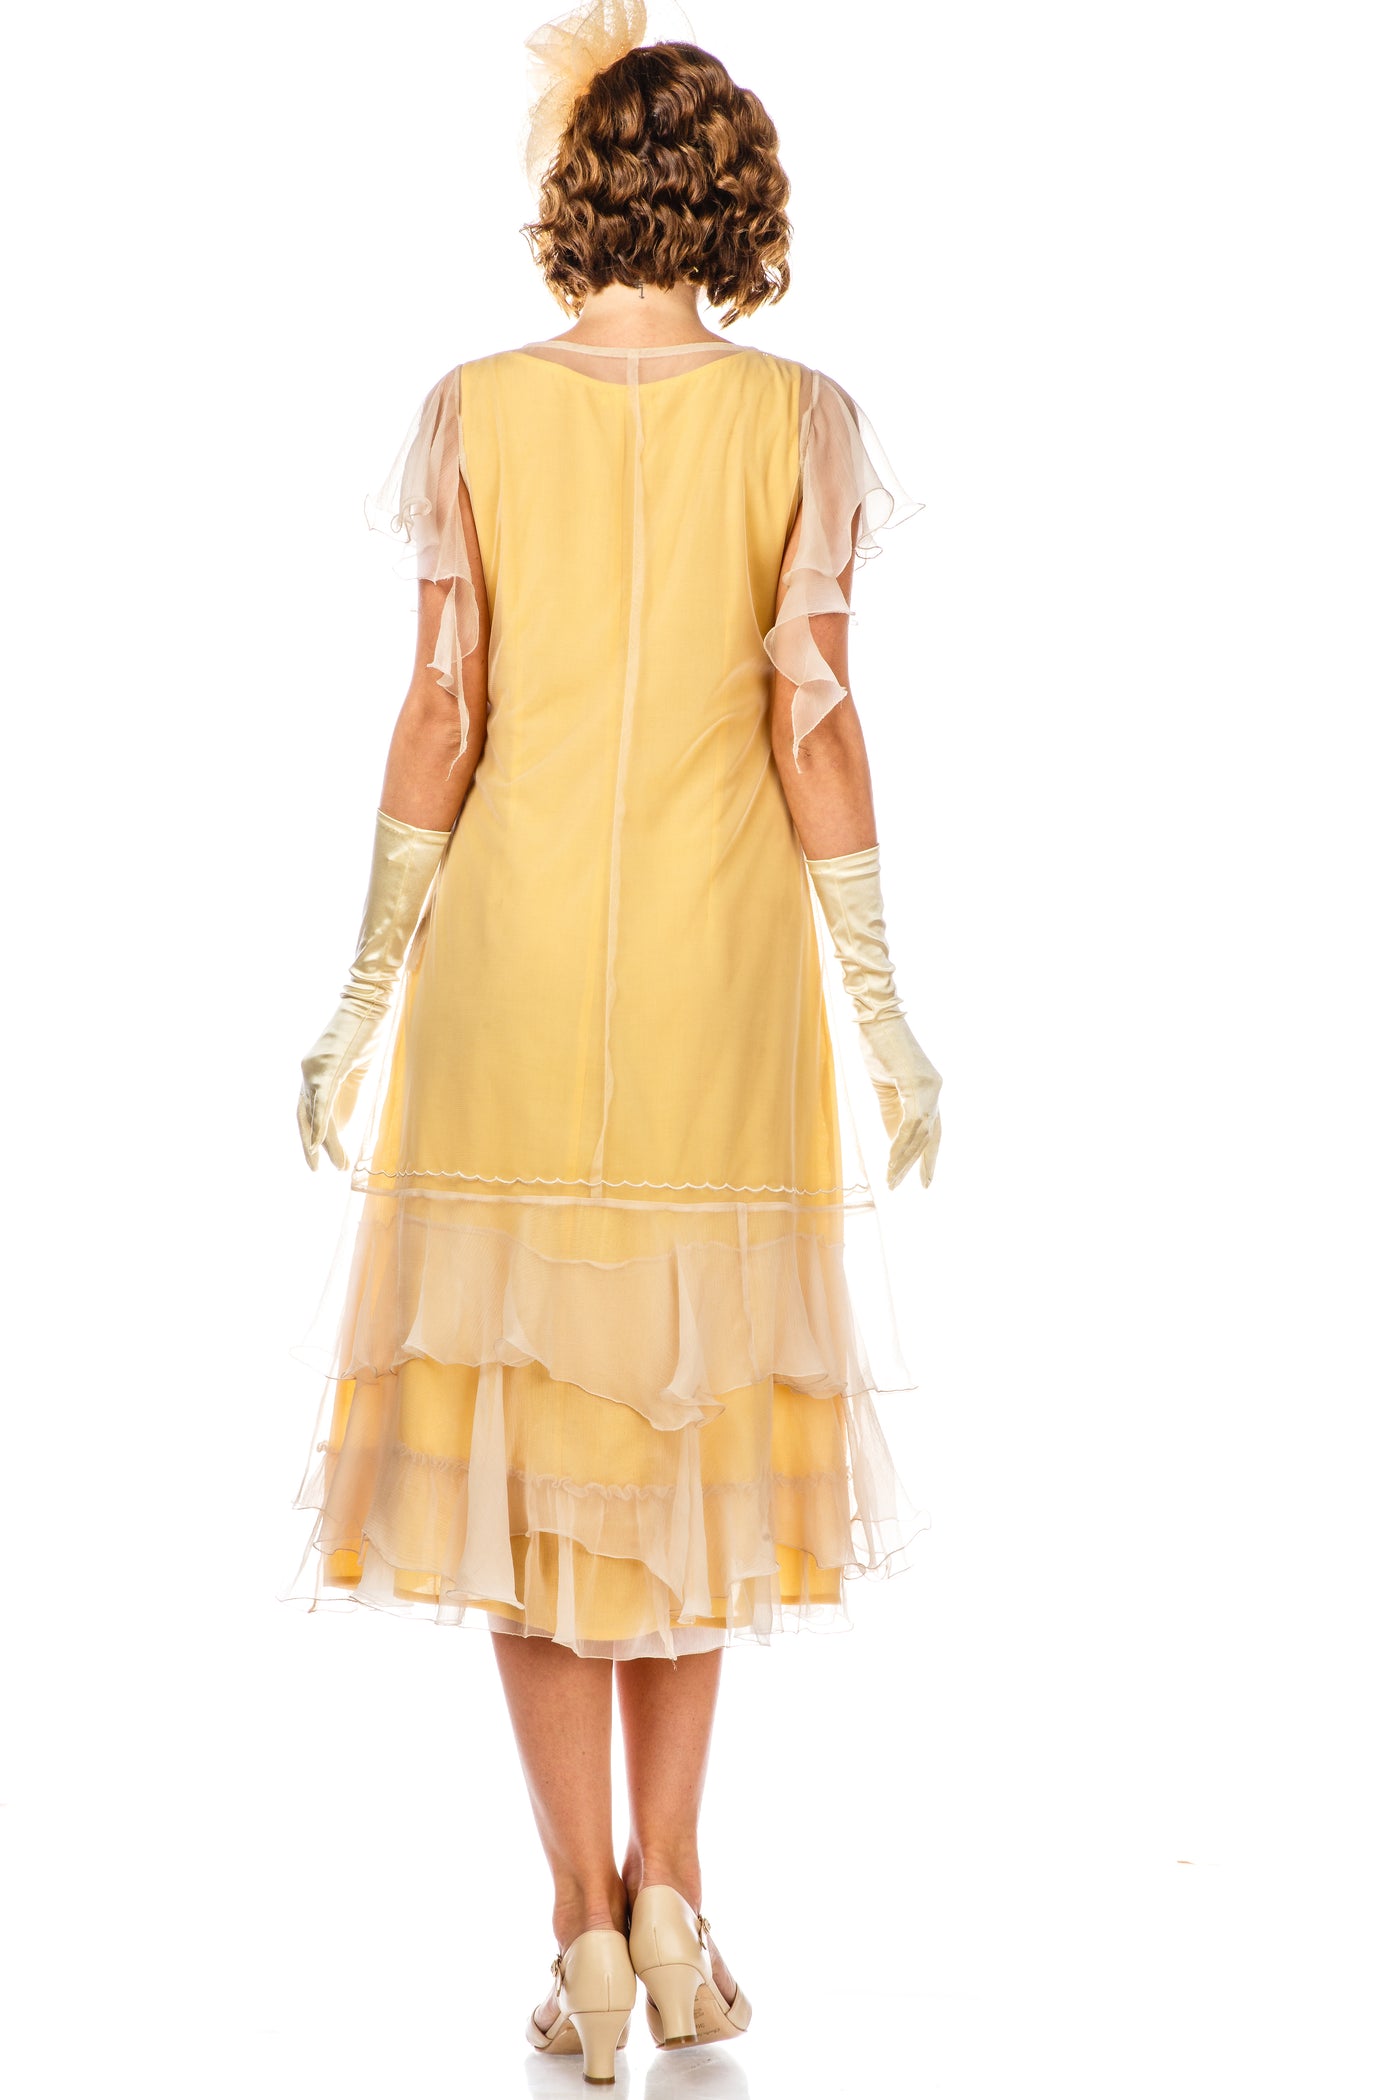 Alexa 1920s Flapper Style Dress AL-283 in Lemon by Nataya